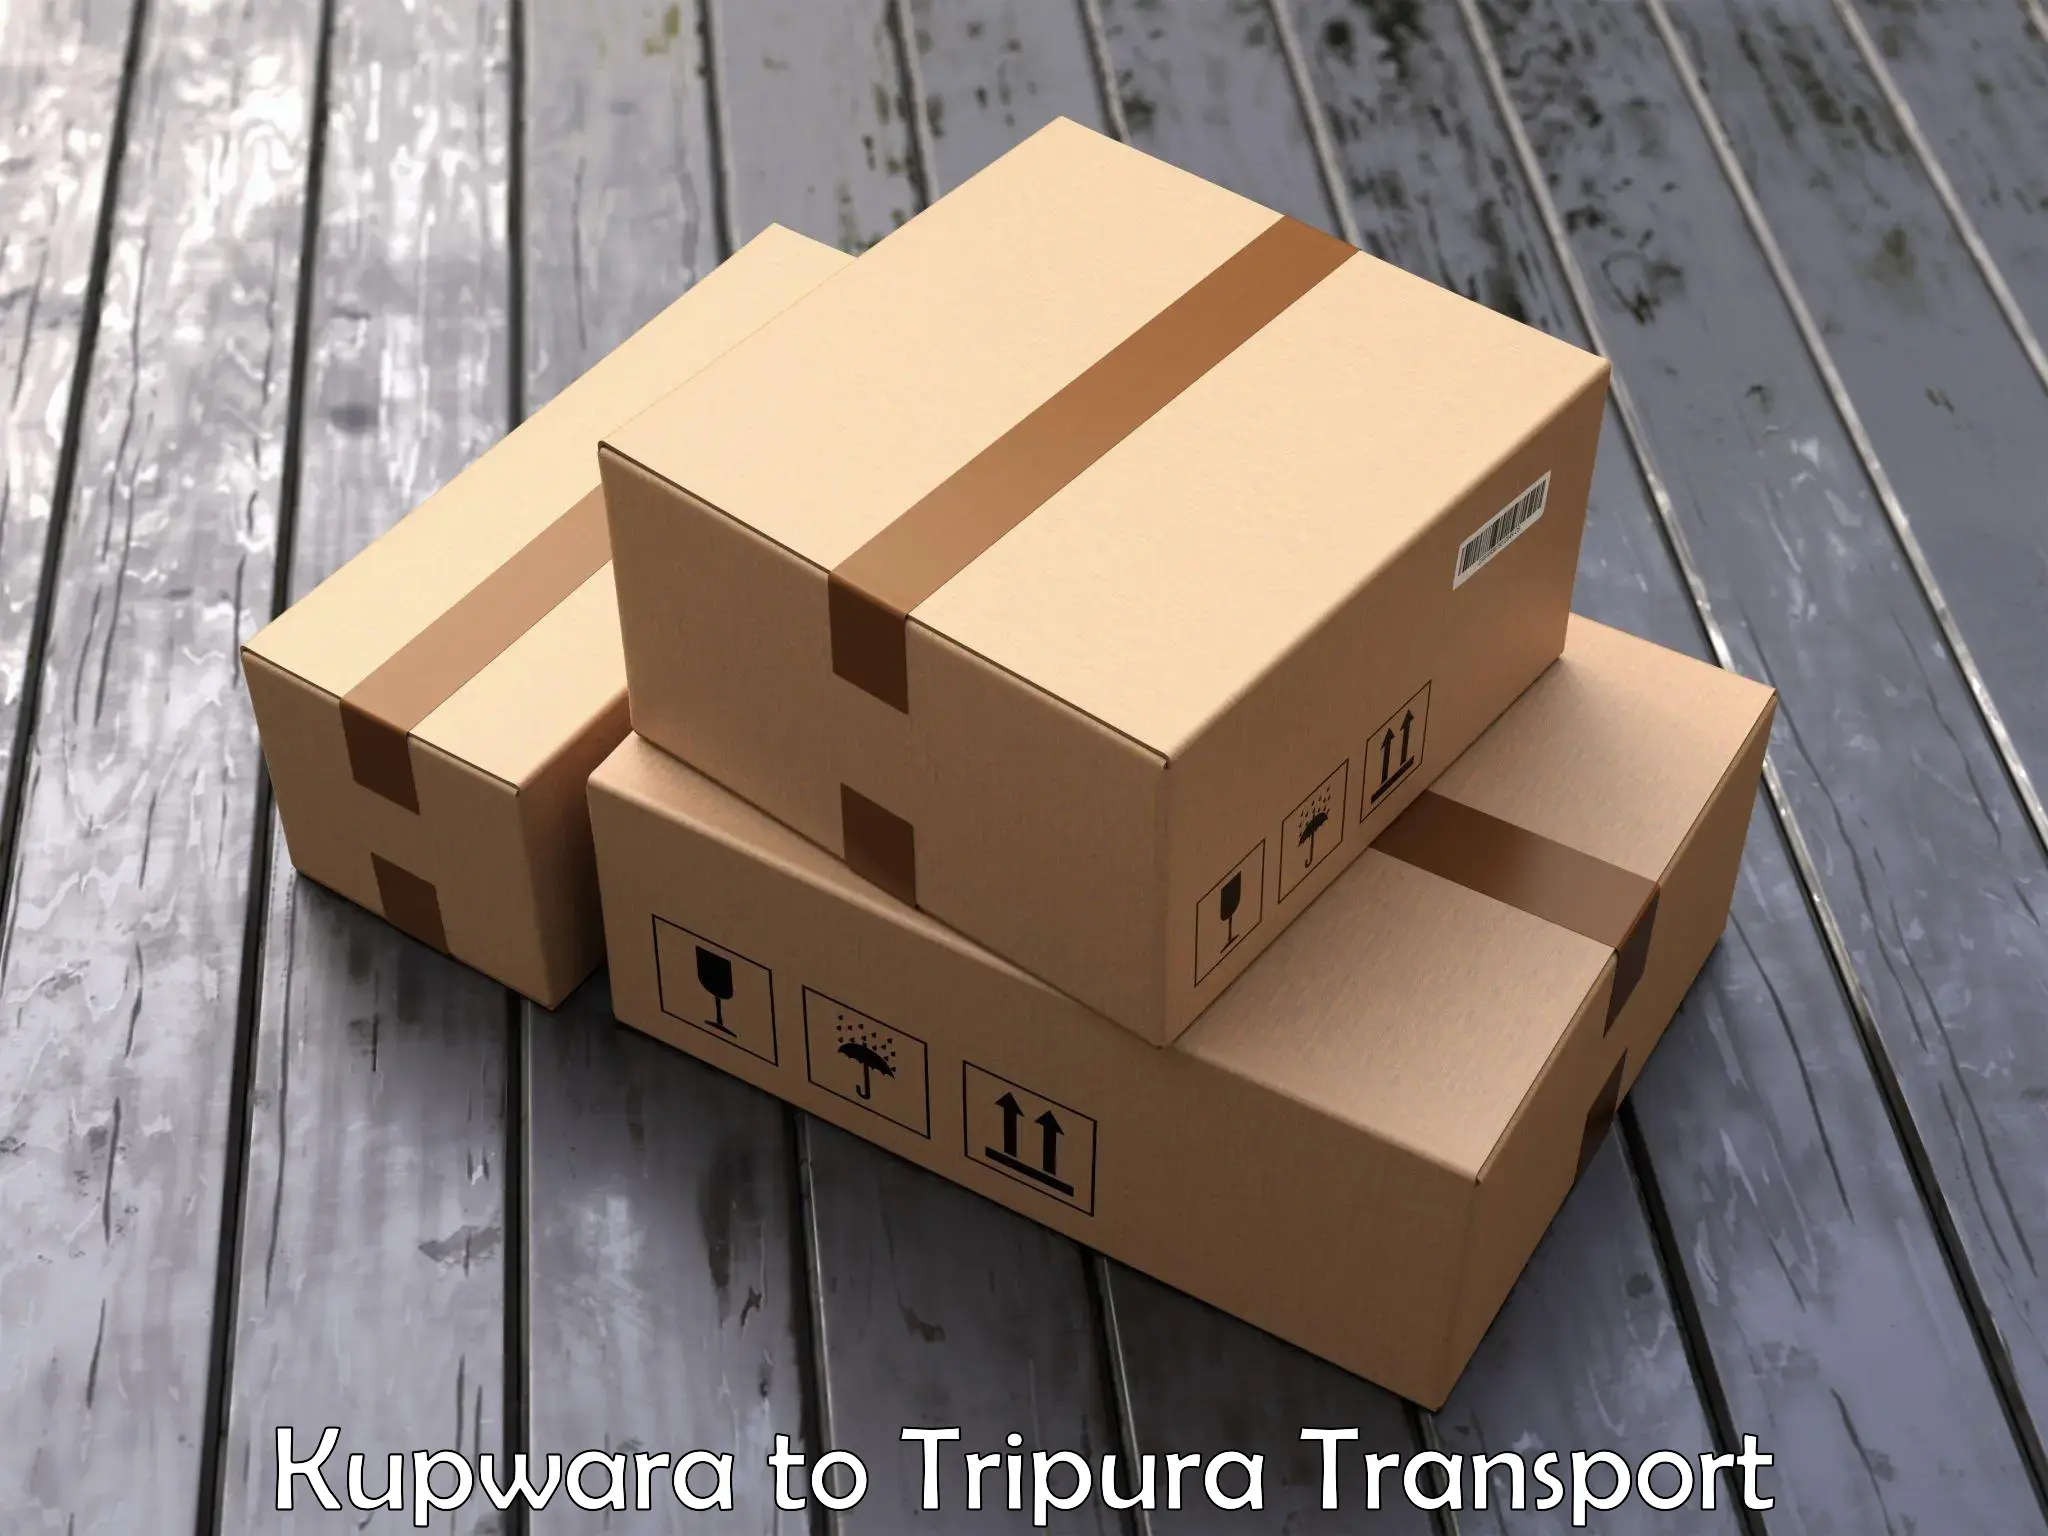 Express transport services Kupwara to Dharmanagar